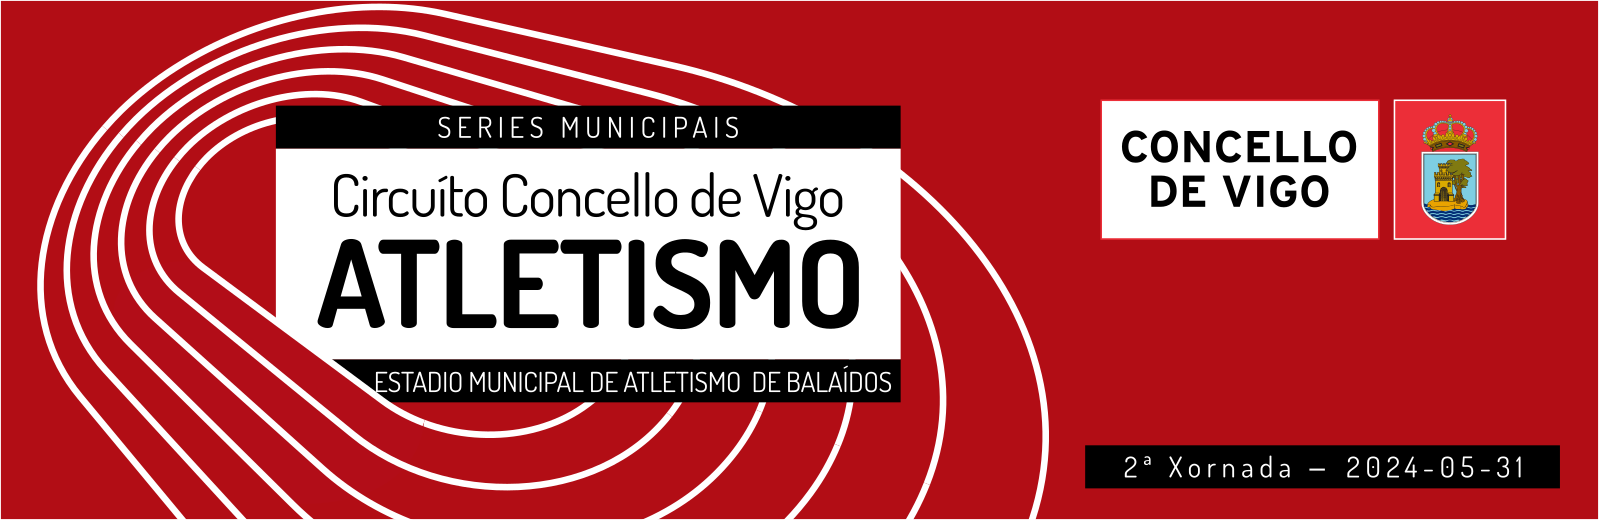  Serie Municipal Concello de Vigo de Atletismo en Pista - Xornada 2.  Estadio Municipal de Atletismo de Balaídos, 31 maio 2024